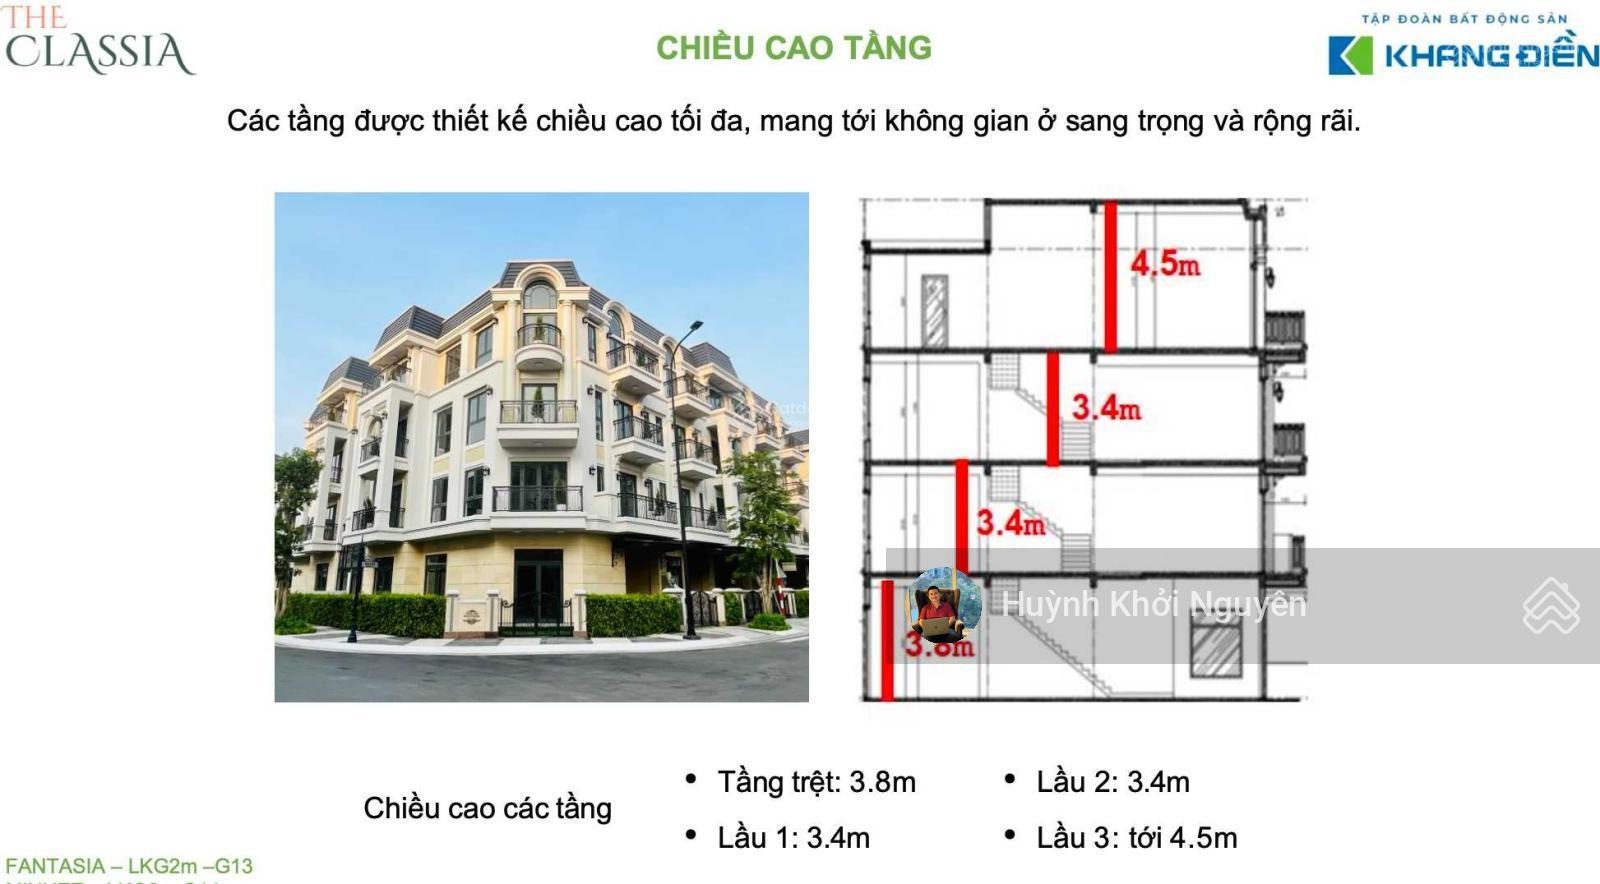 Bán căn hộ The Classia giá 500 triệu, diện tích 203,5 m2, tại Võ Chí Công, phường Phú Hữu, quận 9-01